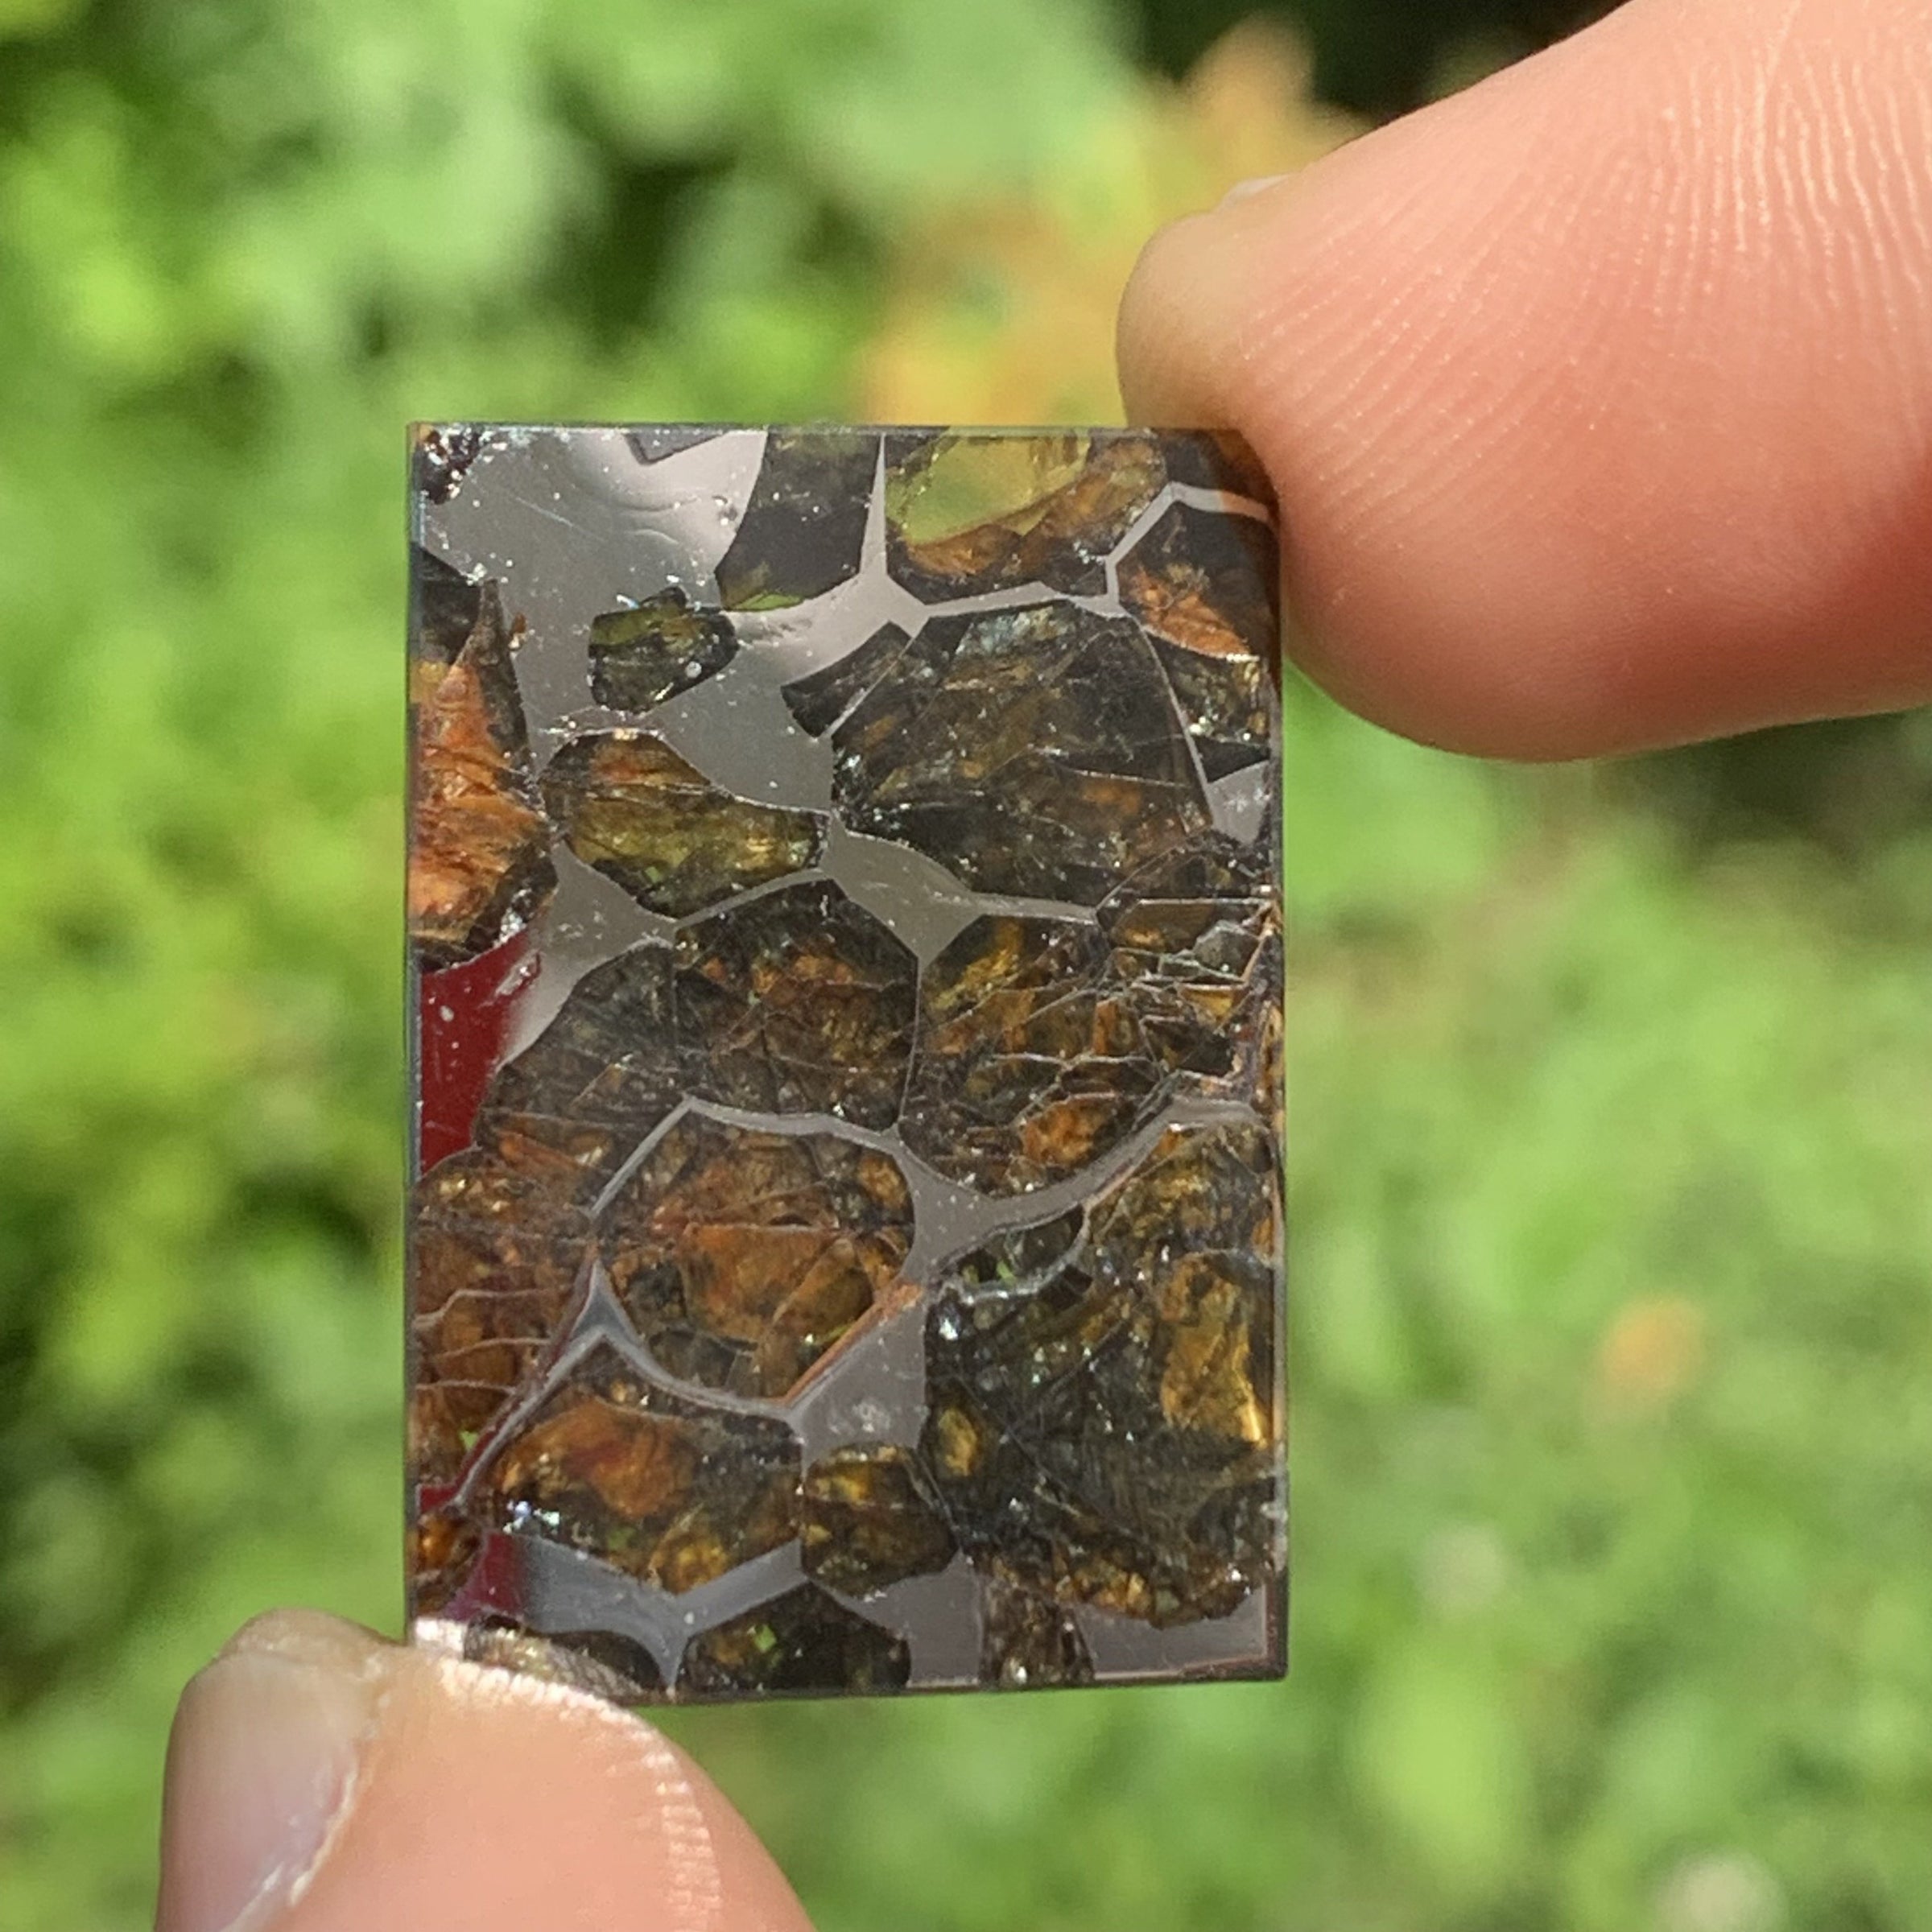 Sericho Pallasite Meteorite #8